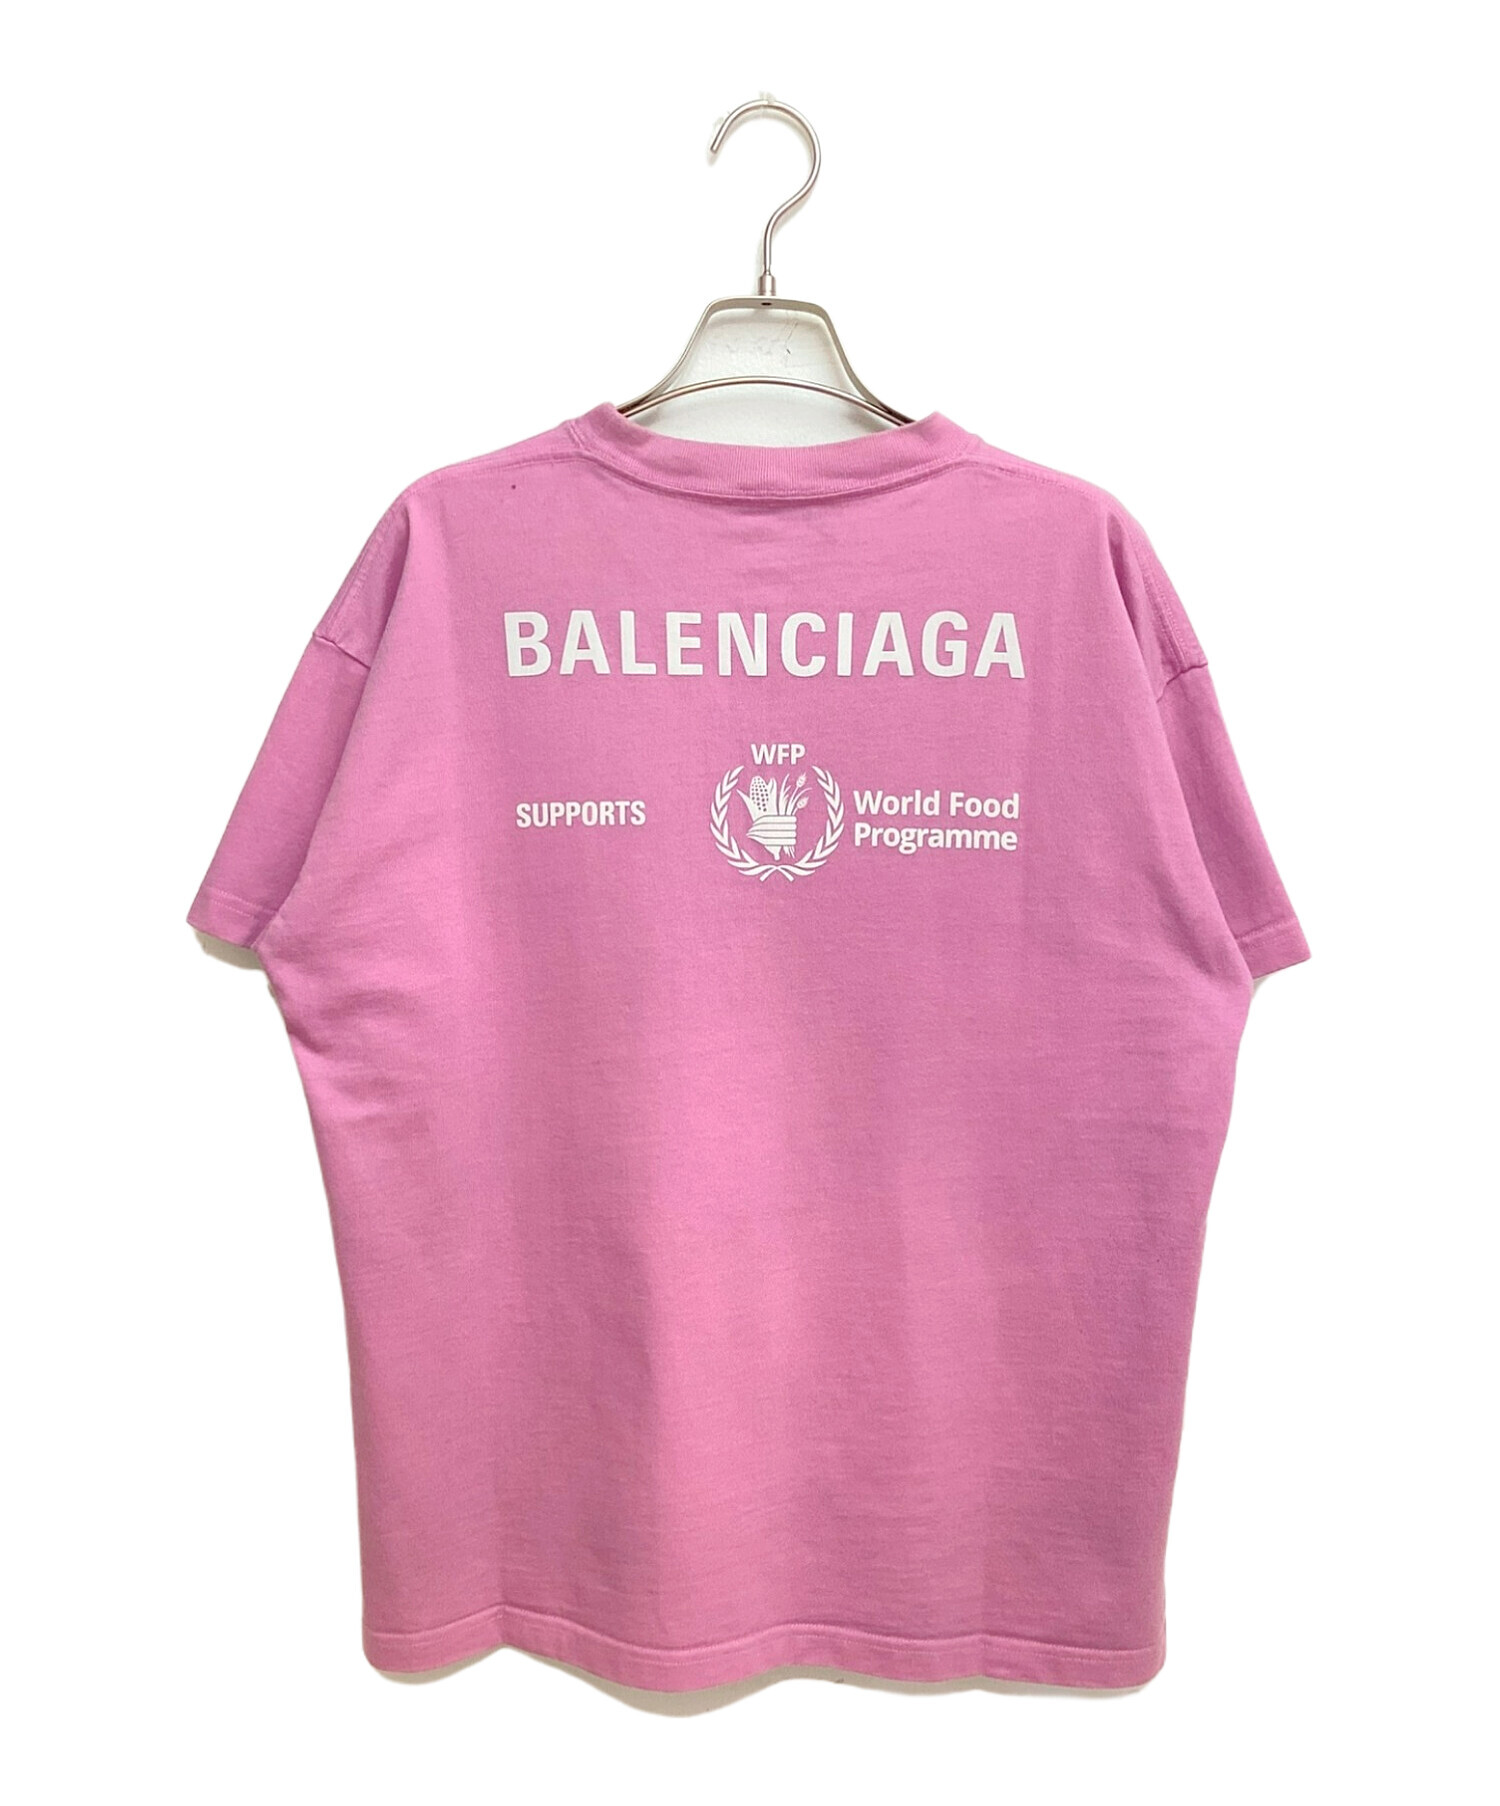 BALENCIAGA (バレンシアガ) WFPロゴ半袖カットソー ピンク サイズ:M